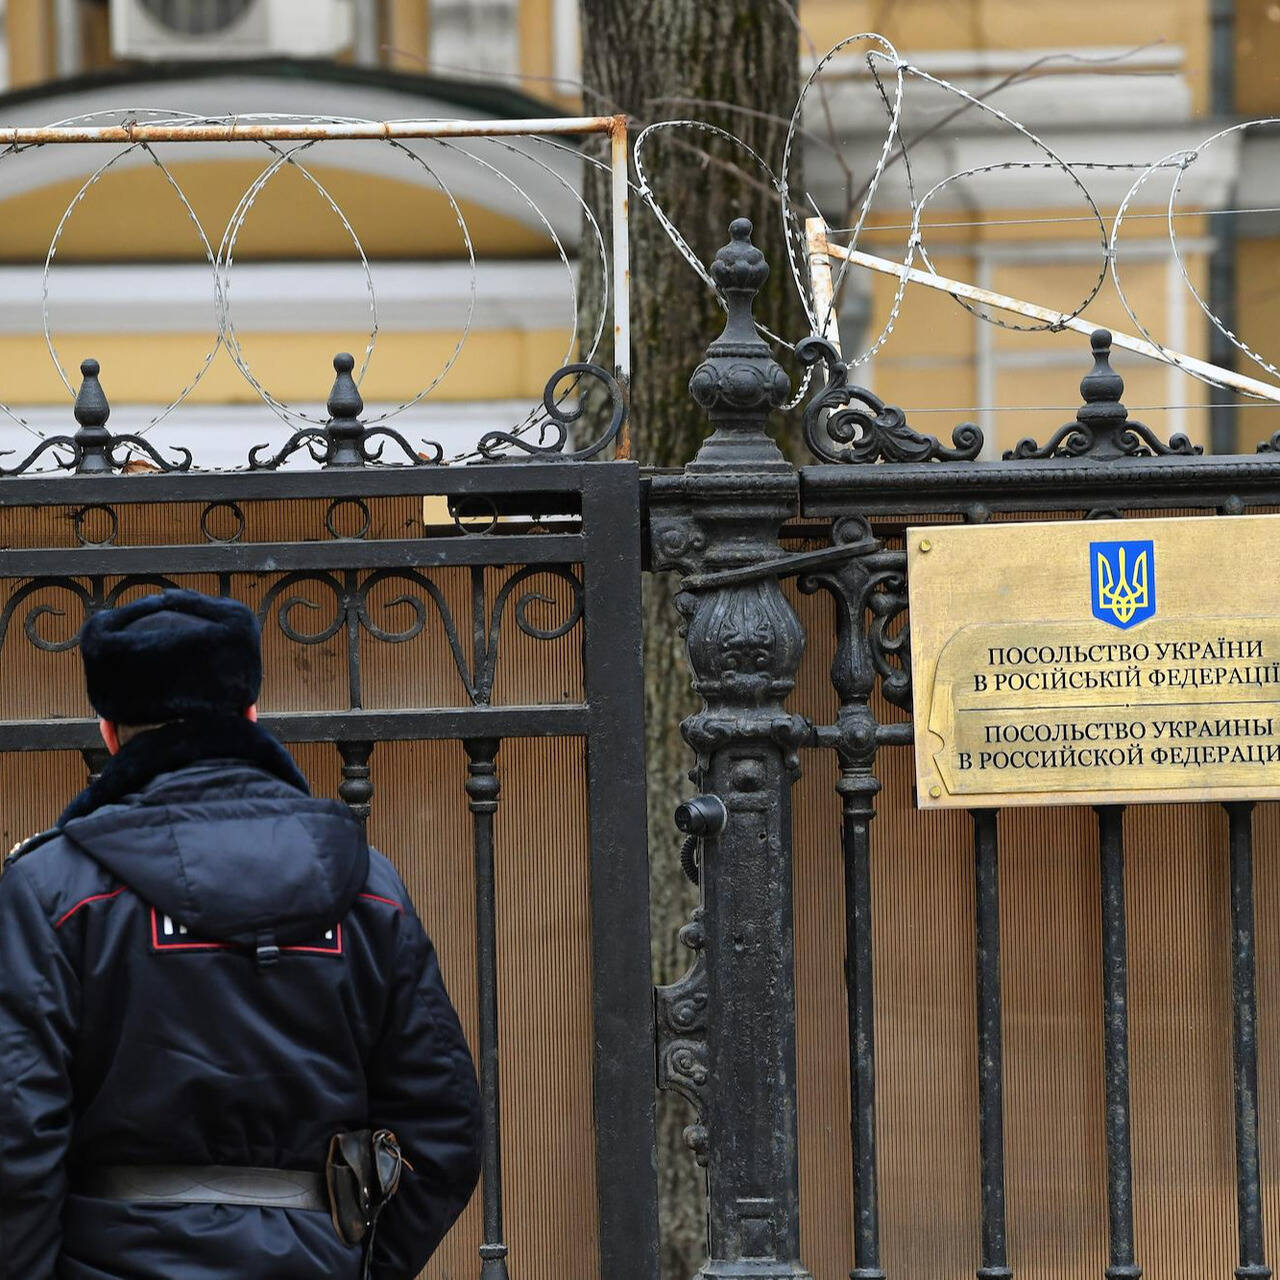 Посольства эвакуируются из Москвы